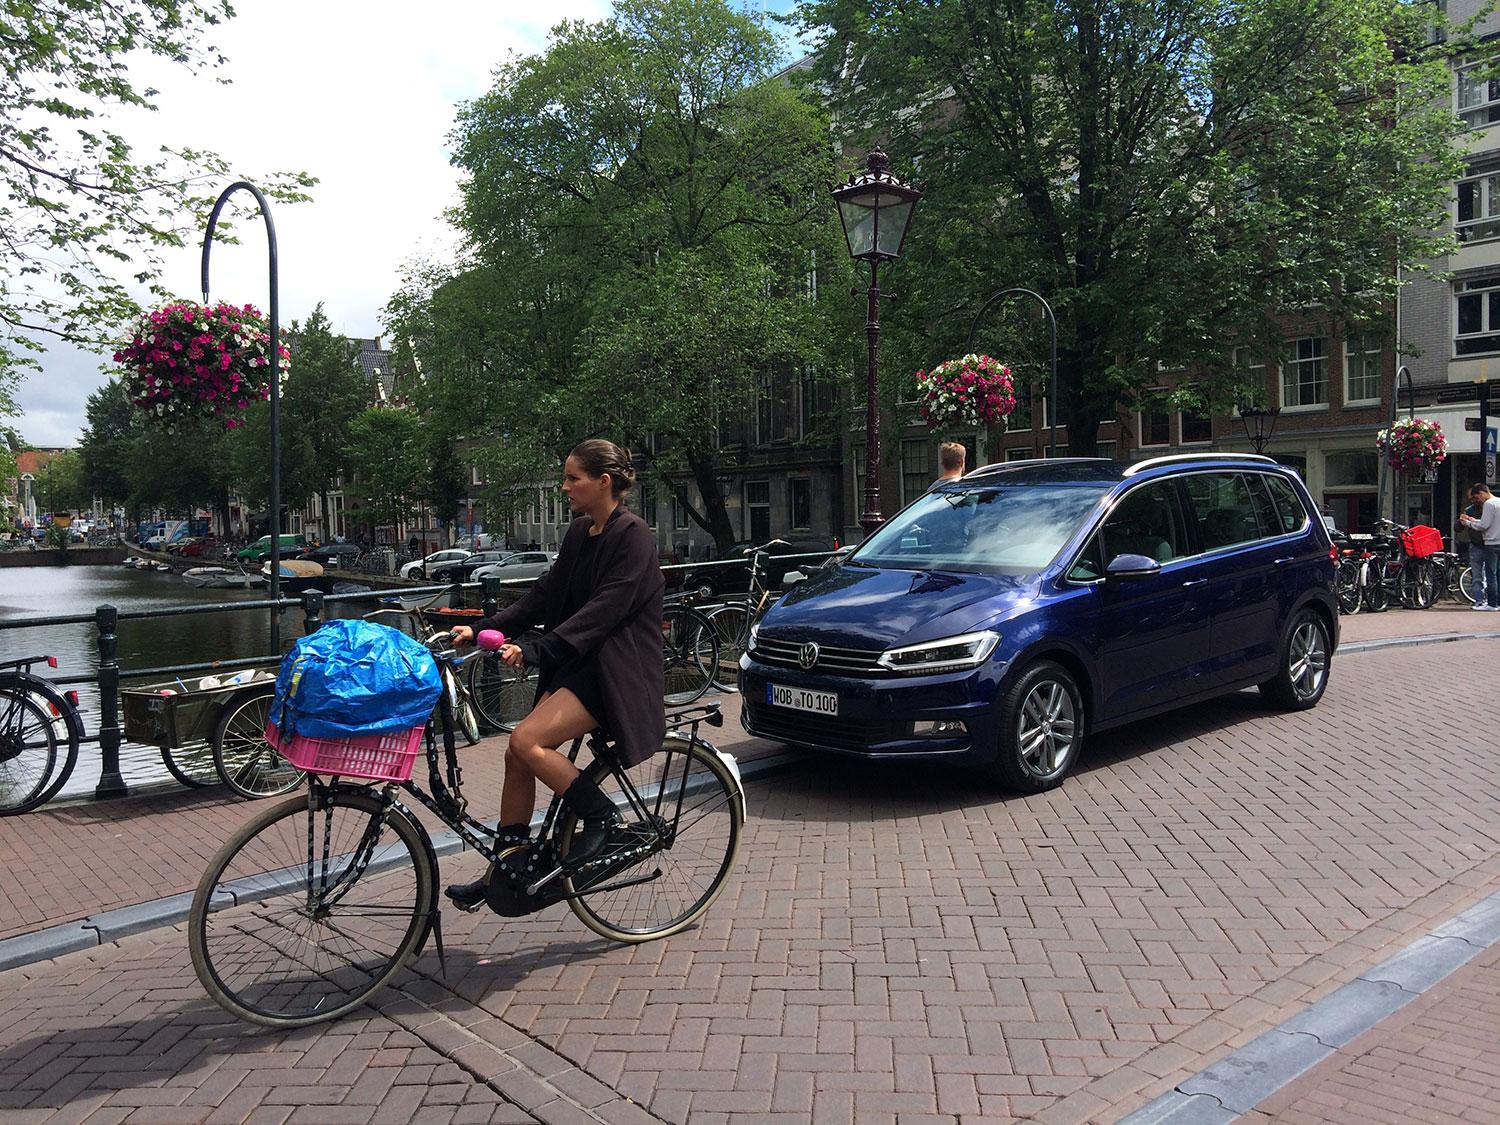 ”VW – SVENSK FORMGIVNING NÄR DEN ÄR SOM BÄST” Robert Collin provkörde nya  VW Touran 1,4 TSI 150 genom Amsterdams toktrånga gränder och trängts med cyklister och turister. – Bilen är perfekt, varken mer eller mindre, skriver Robert Collin.